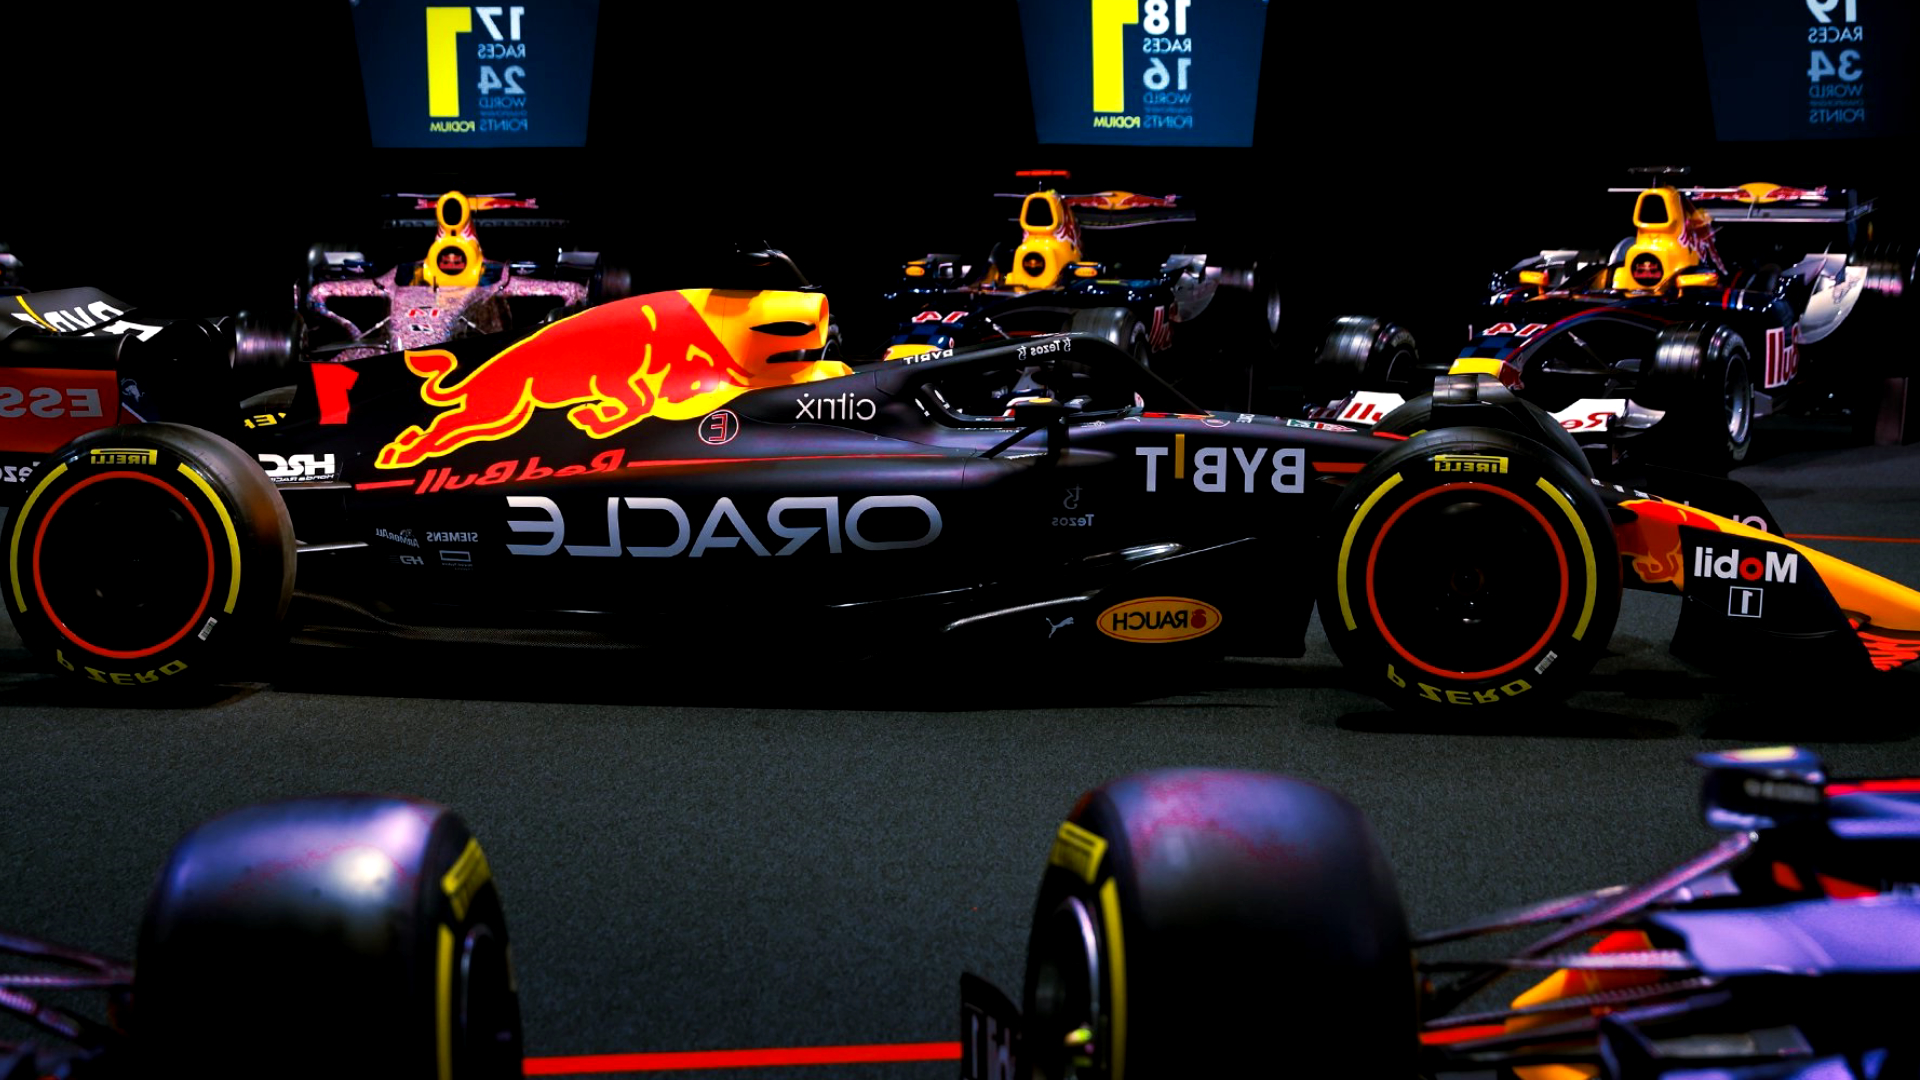 Formule 1 - Bybit nouveau partenaire d'Oracle Red Bull Racing pour le plus grand contrat "crypto" dans le sport